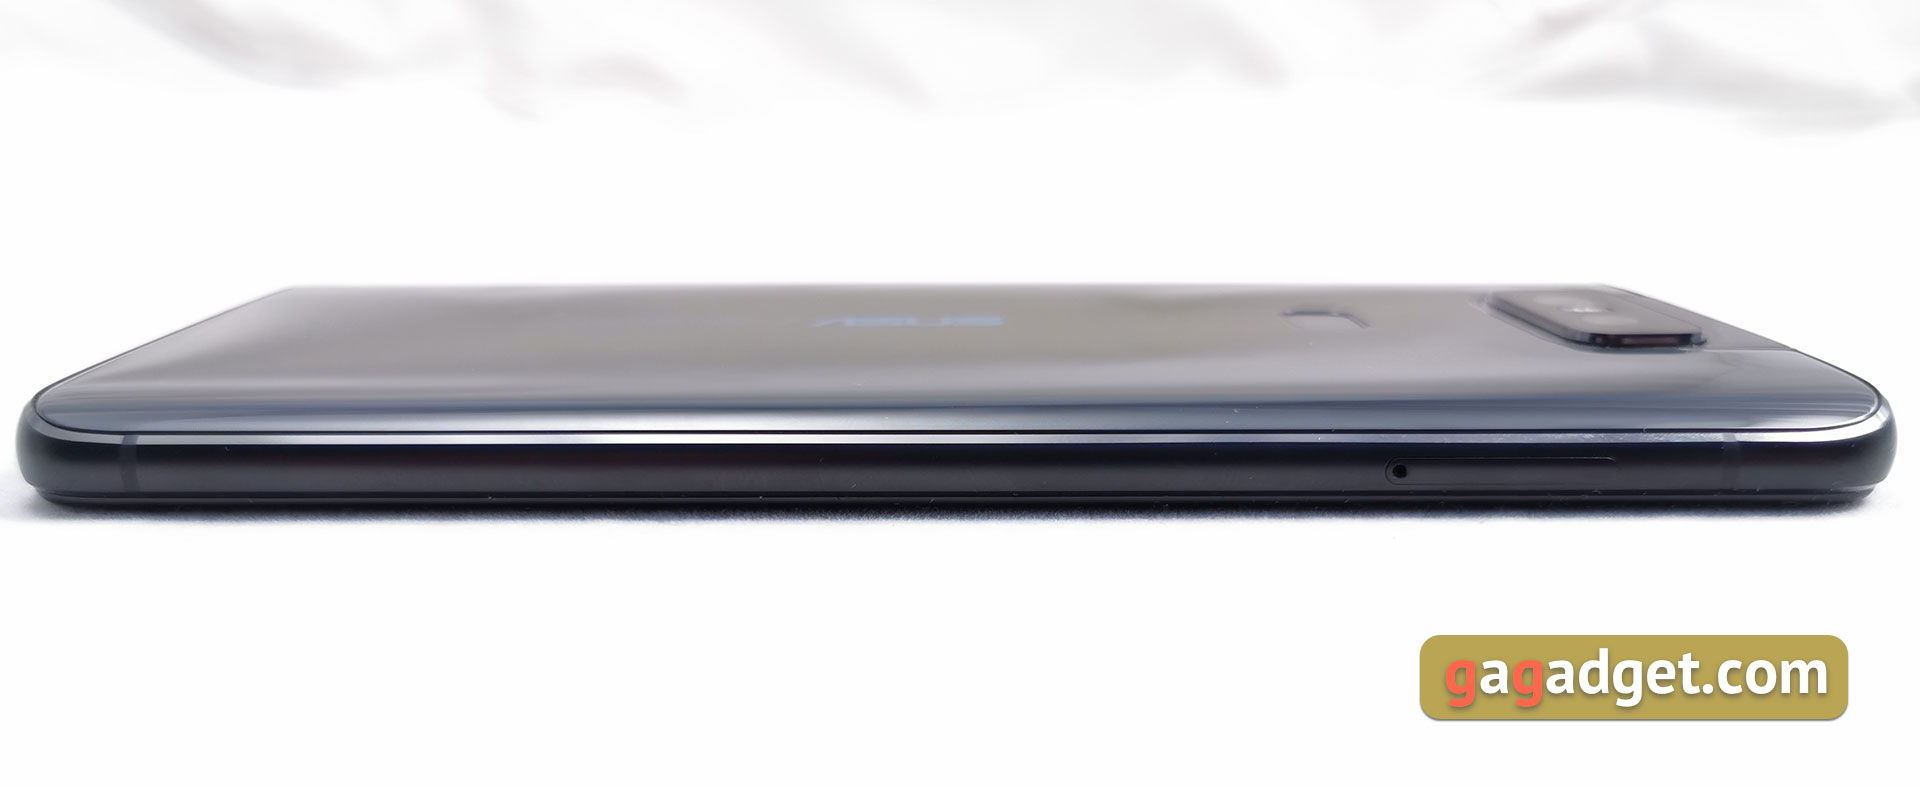 Przegląd ASUS ZenFone 6: "społecznościowy" flagowiec ze Snapdragon 855 i kamerą obracalną-10